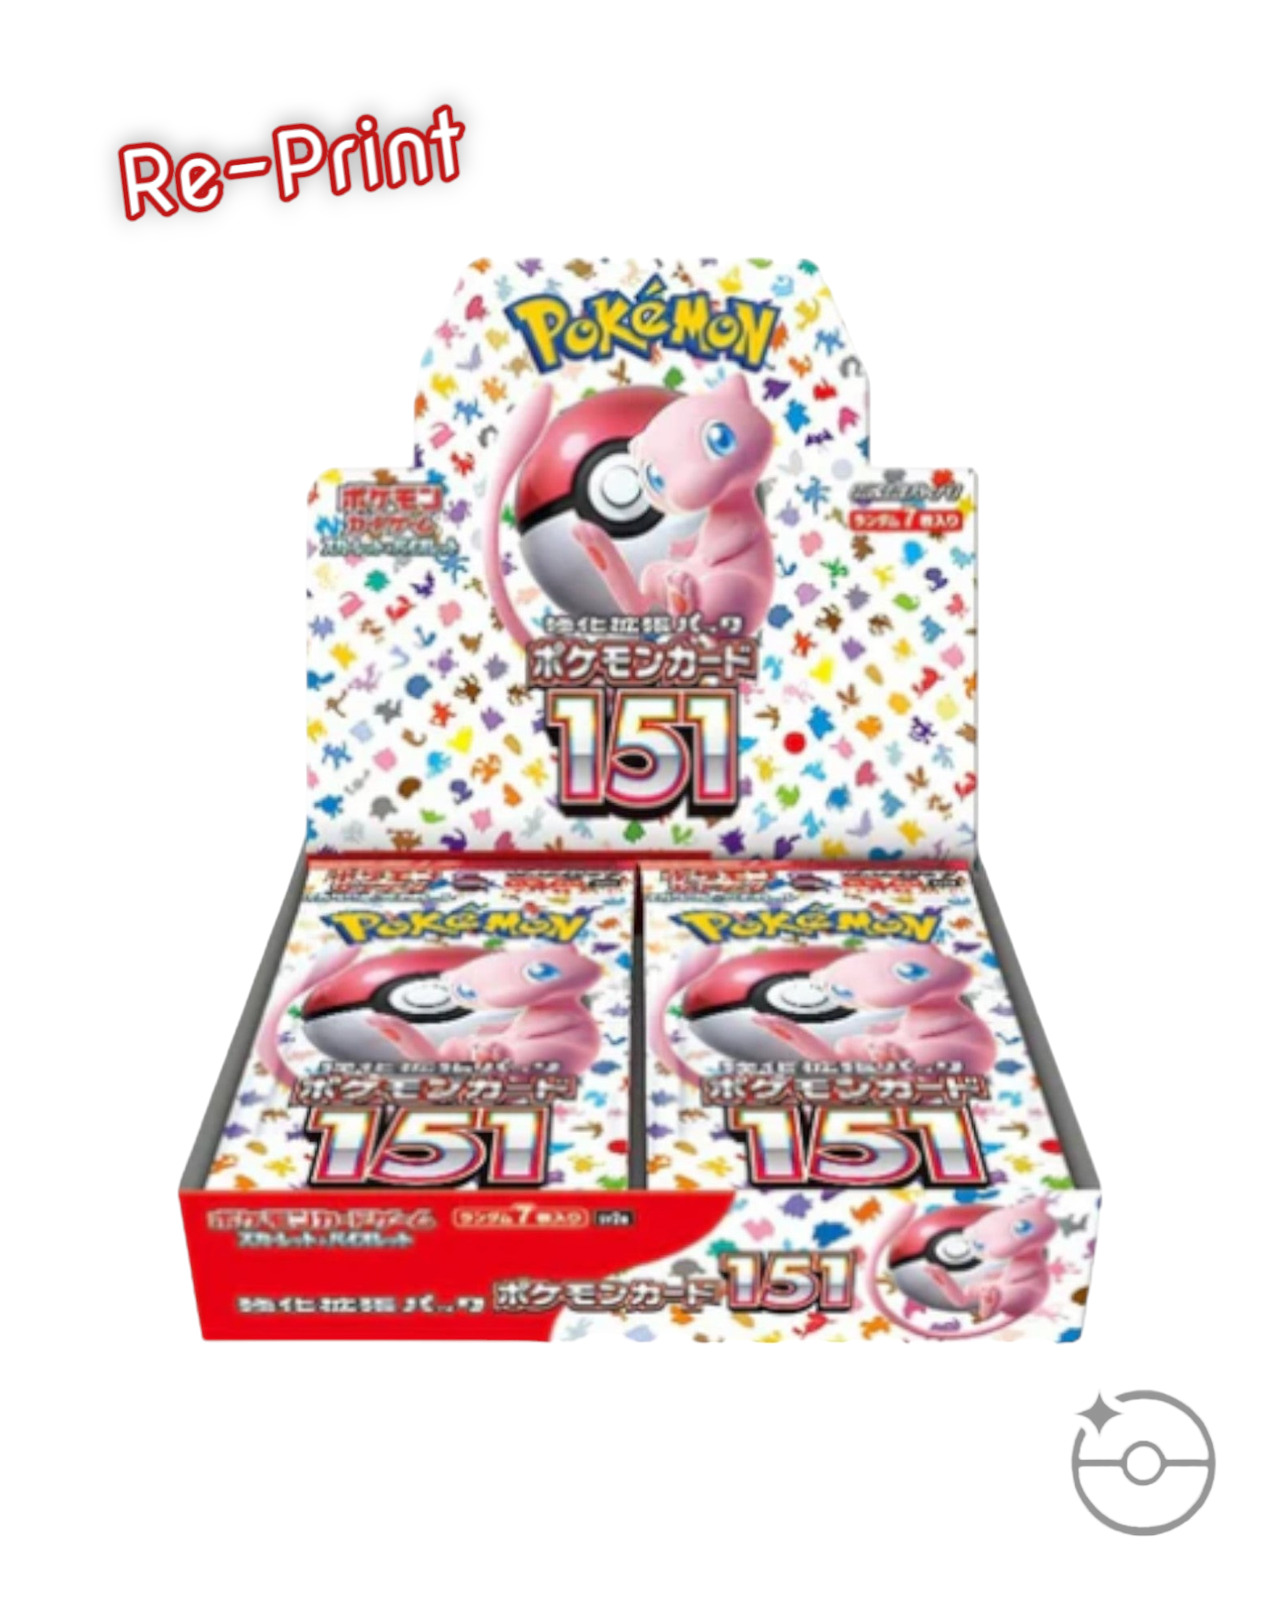 Pokémon Scarlet & Violet - Pokémon 151 Booster Box (Japanese) USA Shipping!